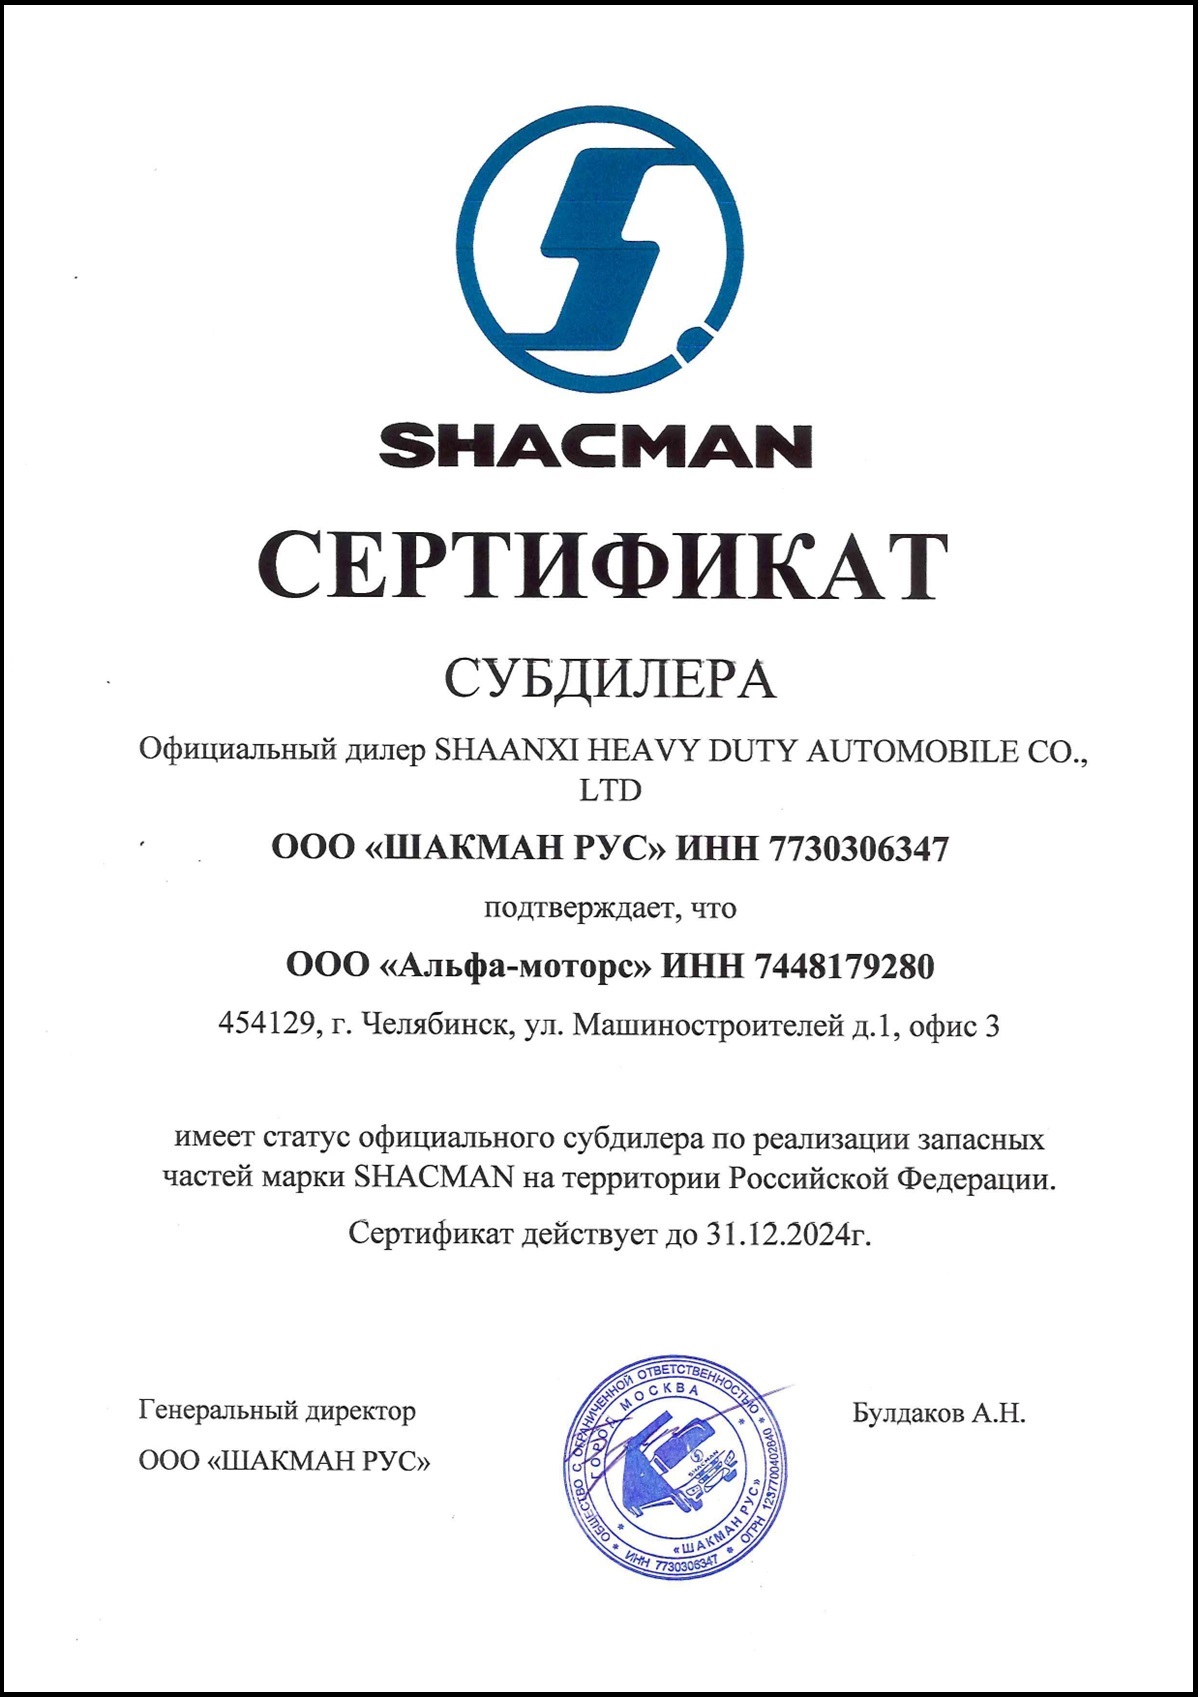 Сертификат субдилера Shacman